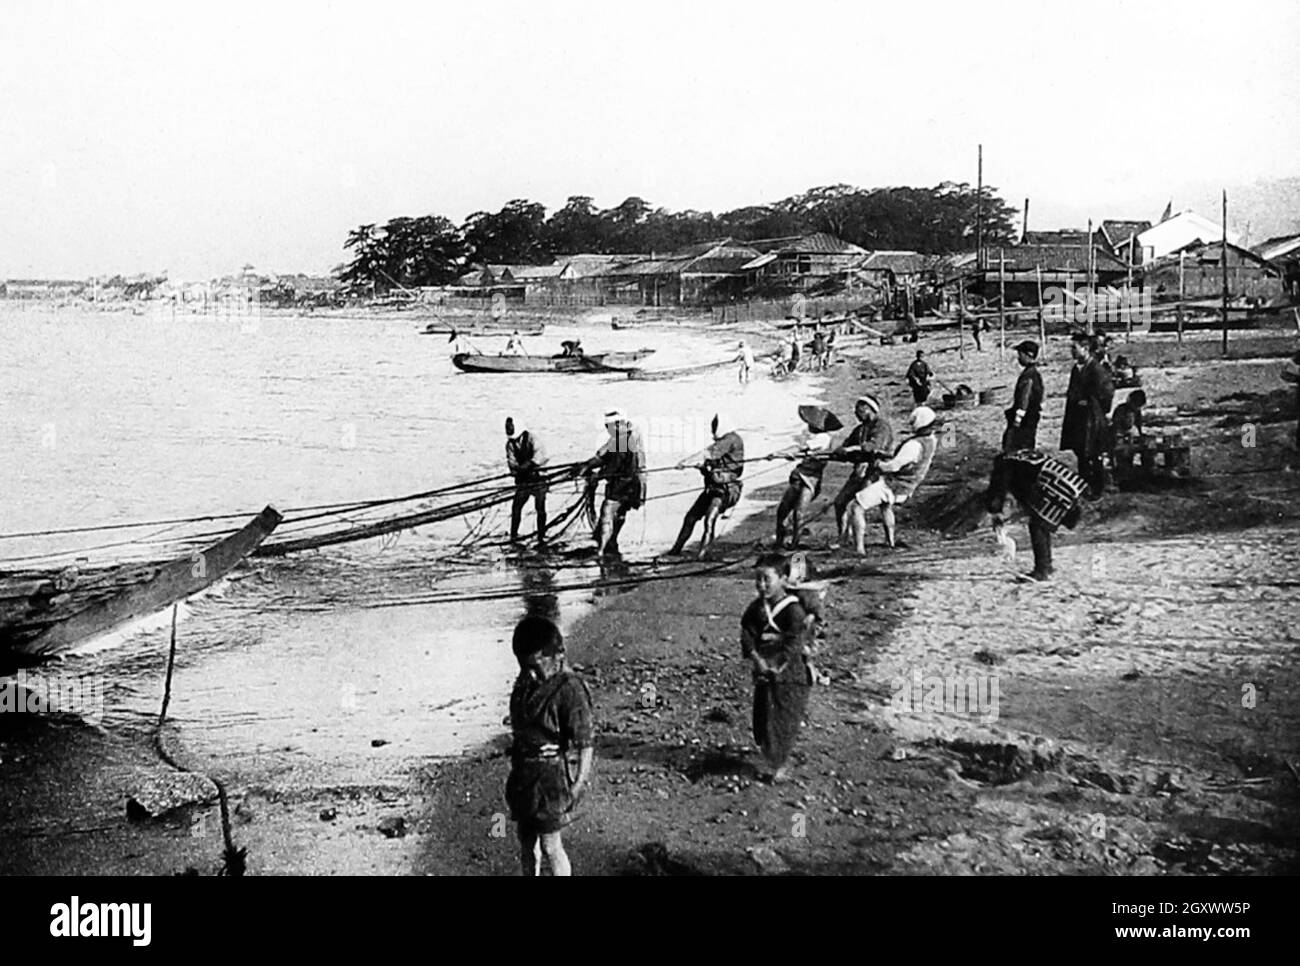 Pêche sur la côte, au Japon, début des années 1900 Banque D'Images